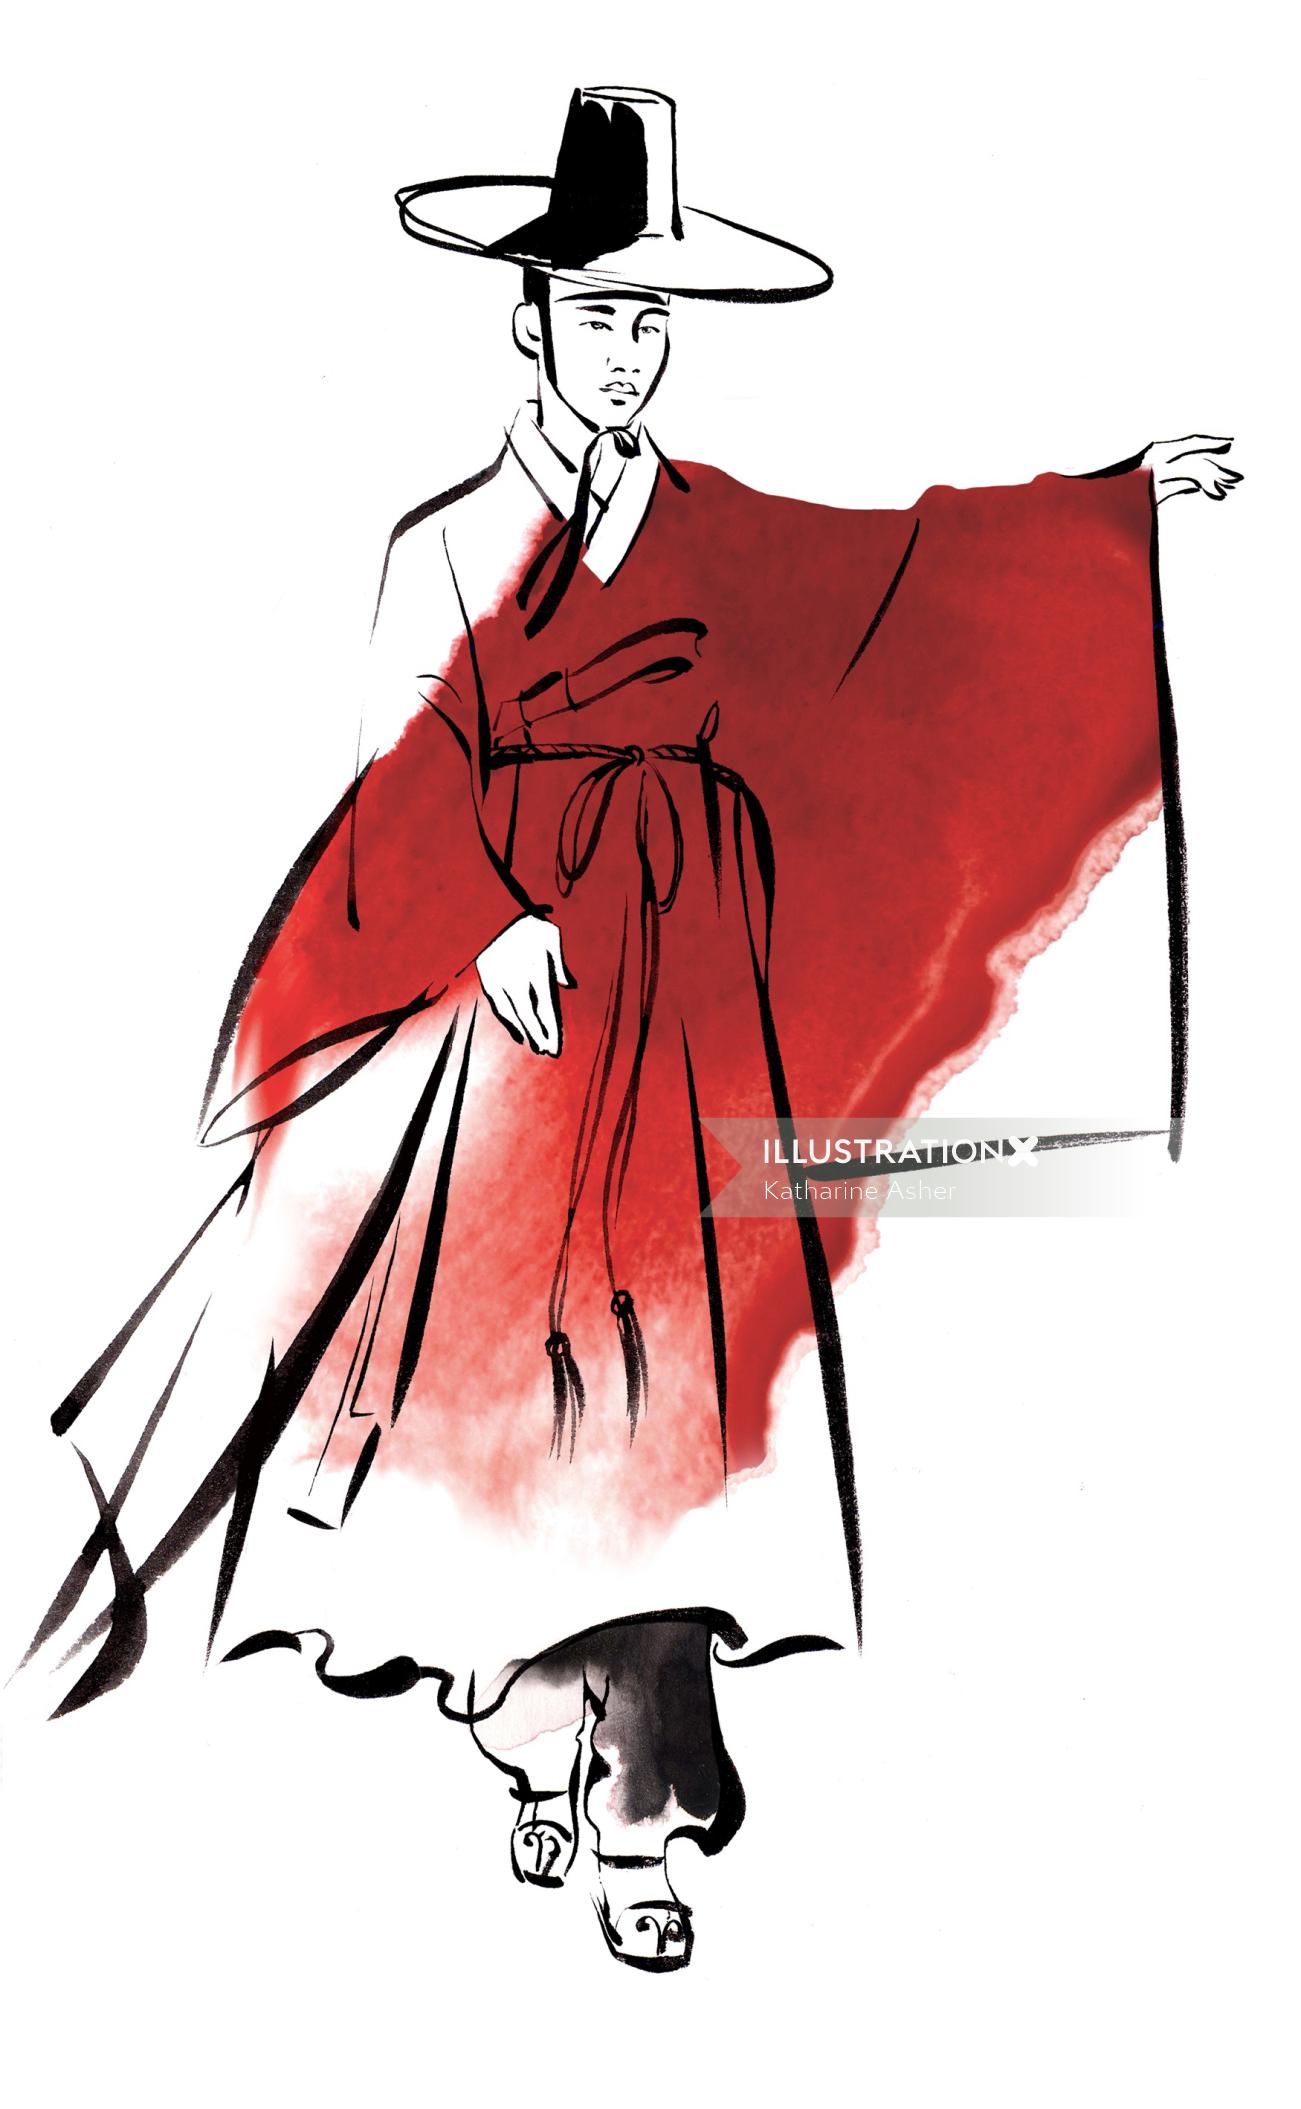 Ilustração de vestido tradicional coreano masculino por Katharine Asher